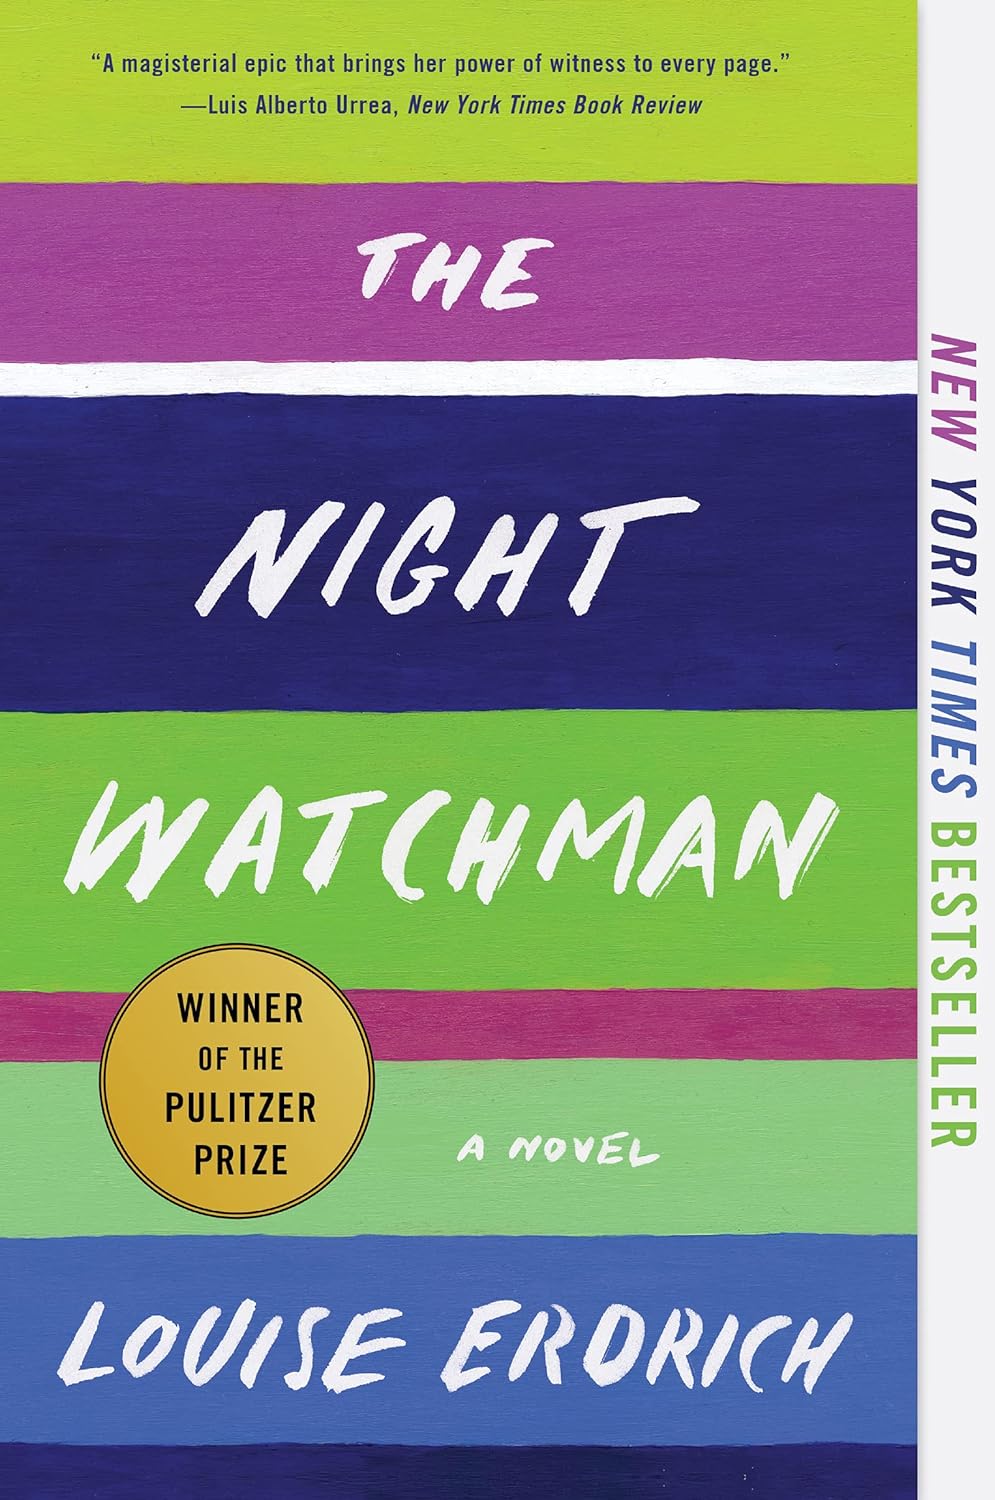 The Night Watchmen by Louise Erdrich (2020)